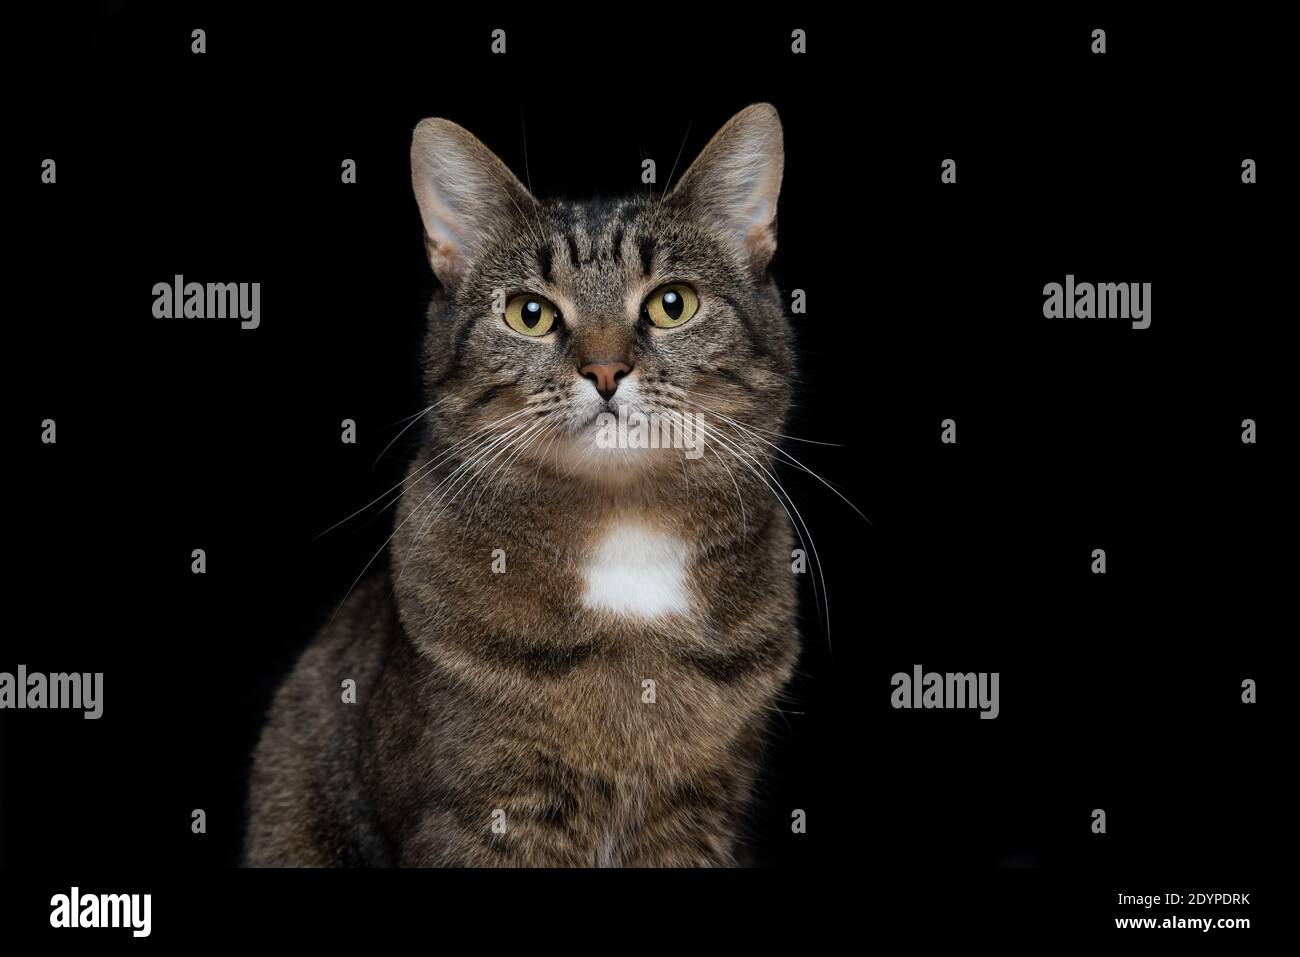 Ritratto in studio di tabby European Shorthair cat su sfondo nero Foto Stock